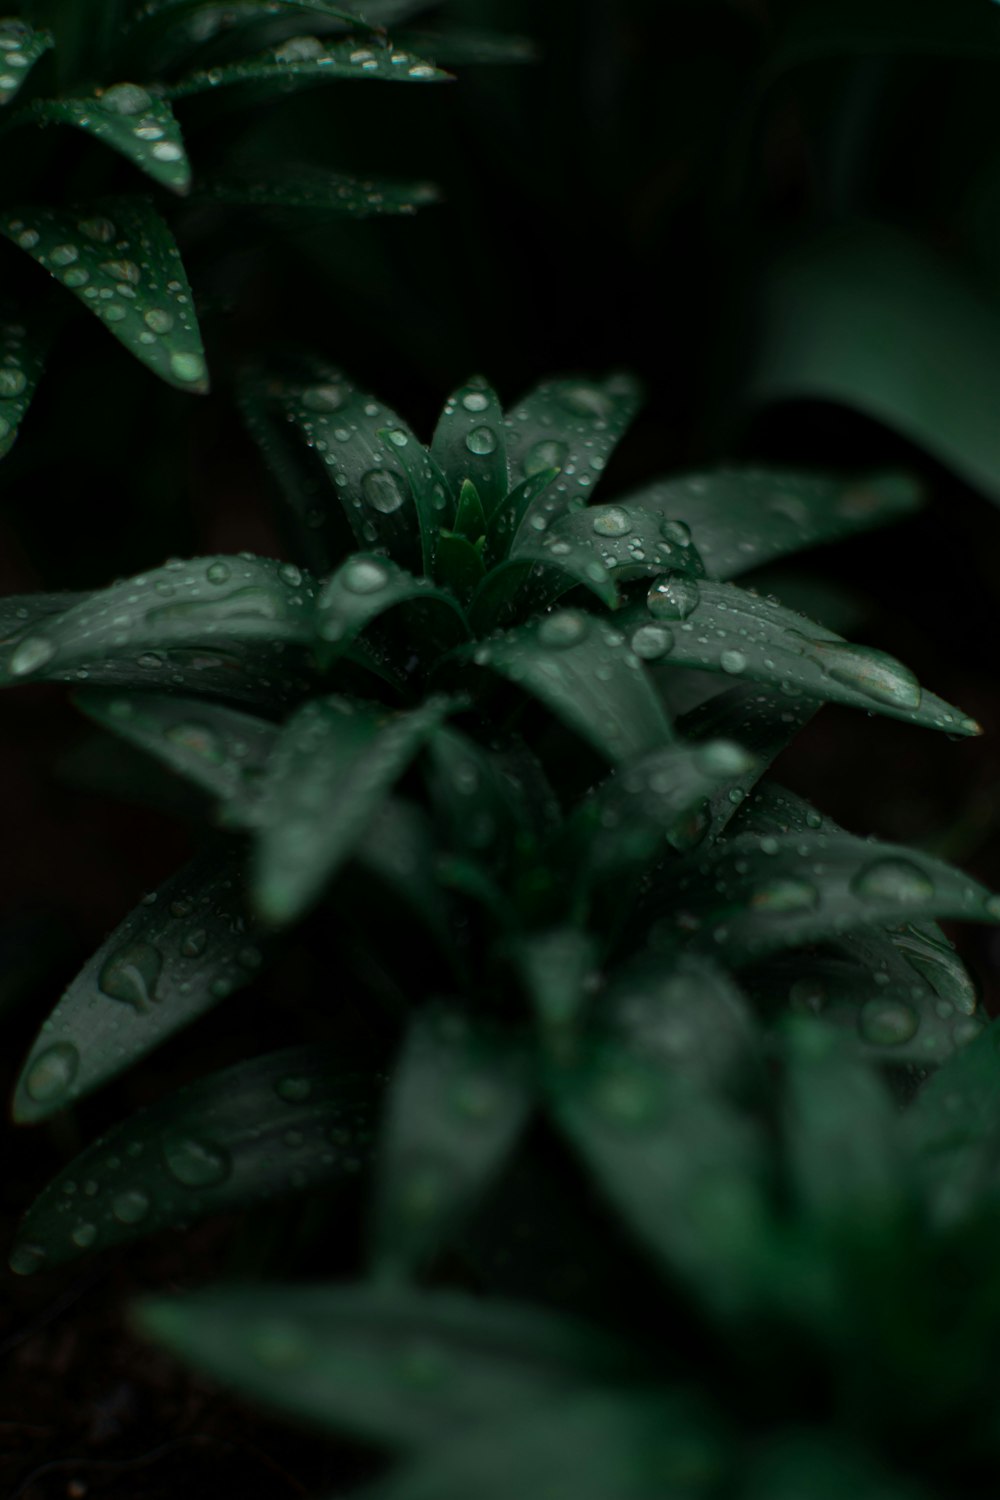 Wassertröpfchen auf grüner Pflanze